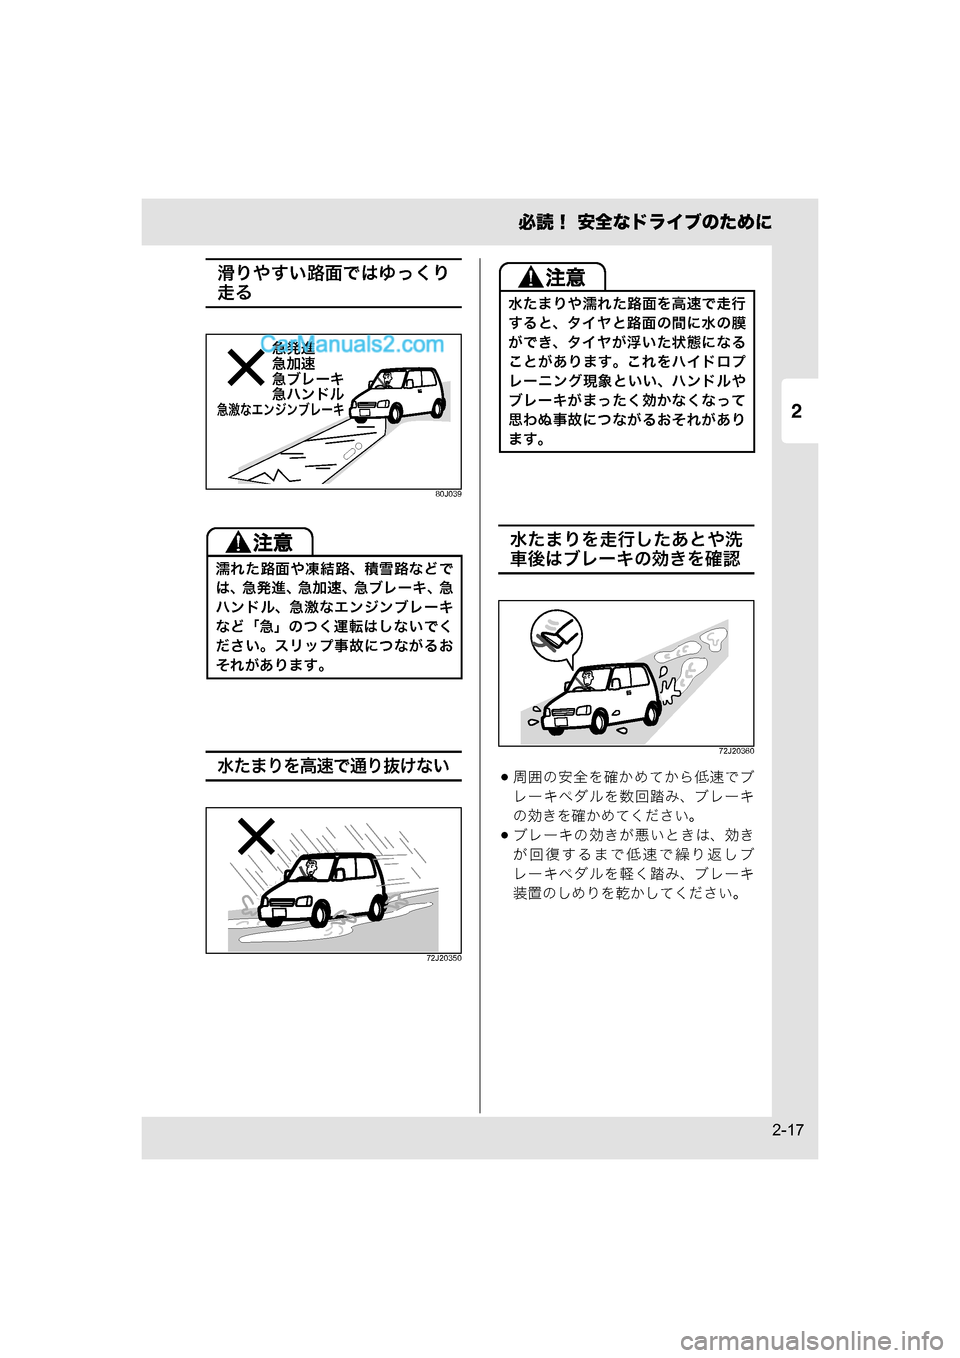 MAZDA MODEL CARROL 2015  取扱説明書 (キャロル) (in Japanese) 2
必読！ 安全なドライブのために
2-17
滑りやすい路面ではゆっくり
走る
80J039
水たまりを高速で通り抜けない
72J20350
水たまりを走行したあとや洗
車